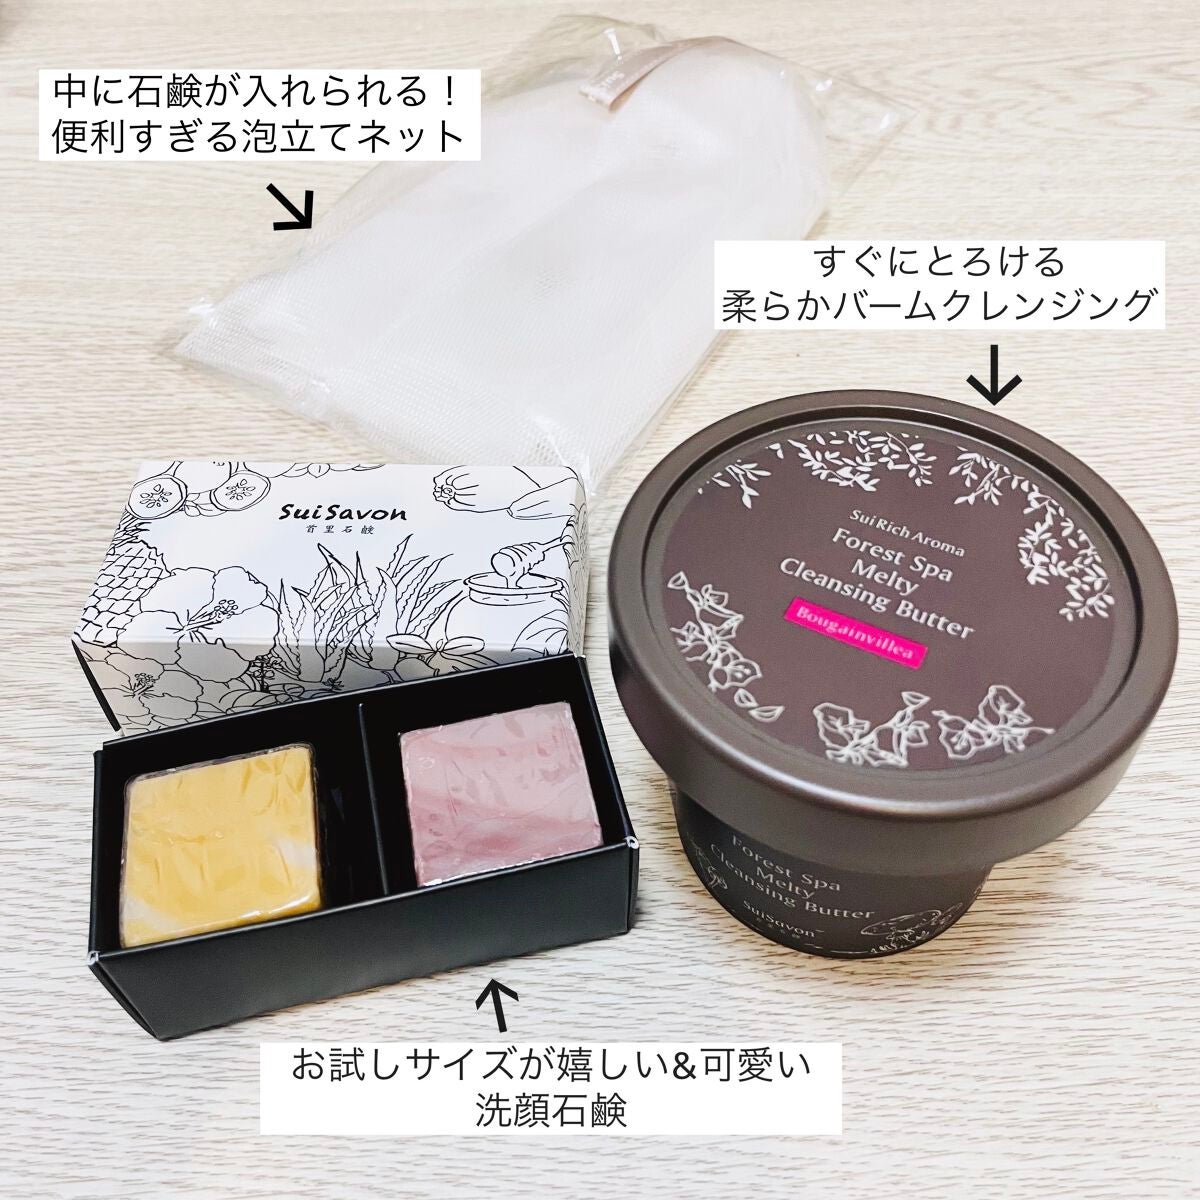 SuiSavonのスキンケア・基礎化粧品 ボタニカルハンドメイド石鹸